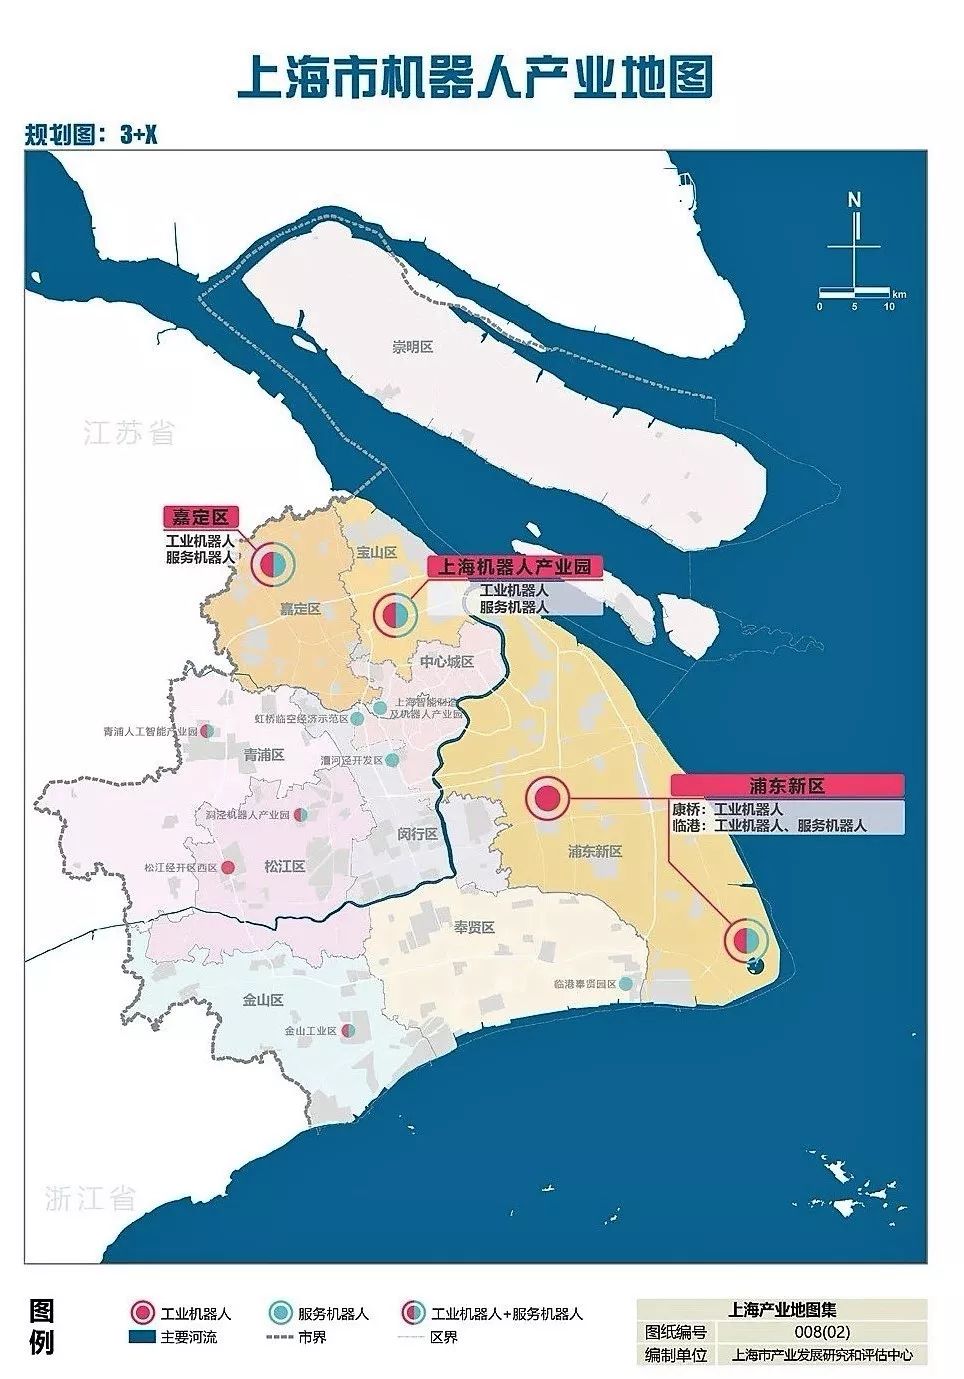 上海各区地图分布图 上海市地图区域划分宝山区